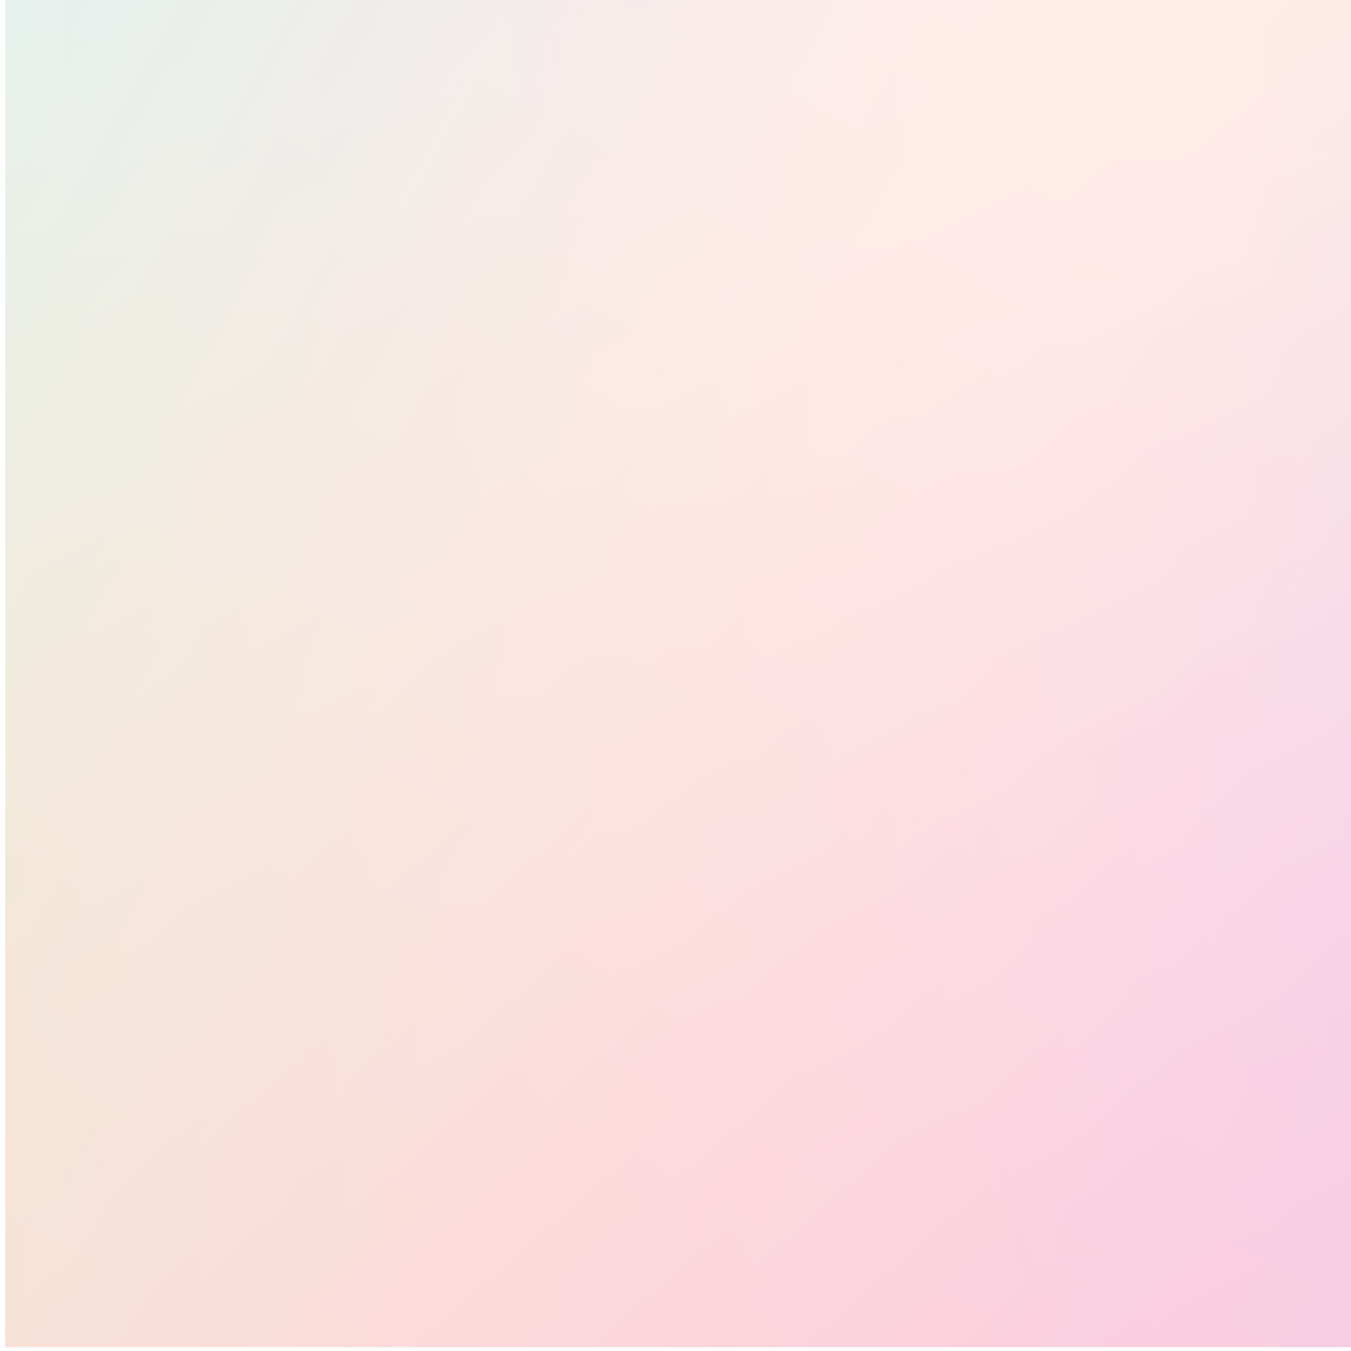 Blur Soft Gradient Background